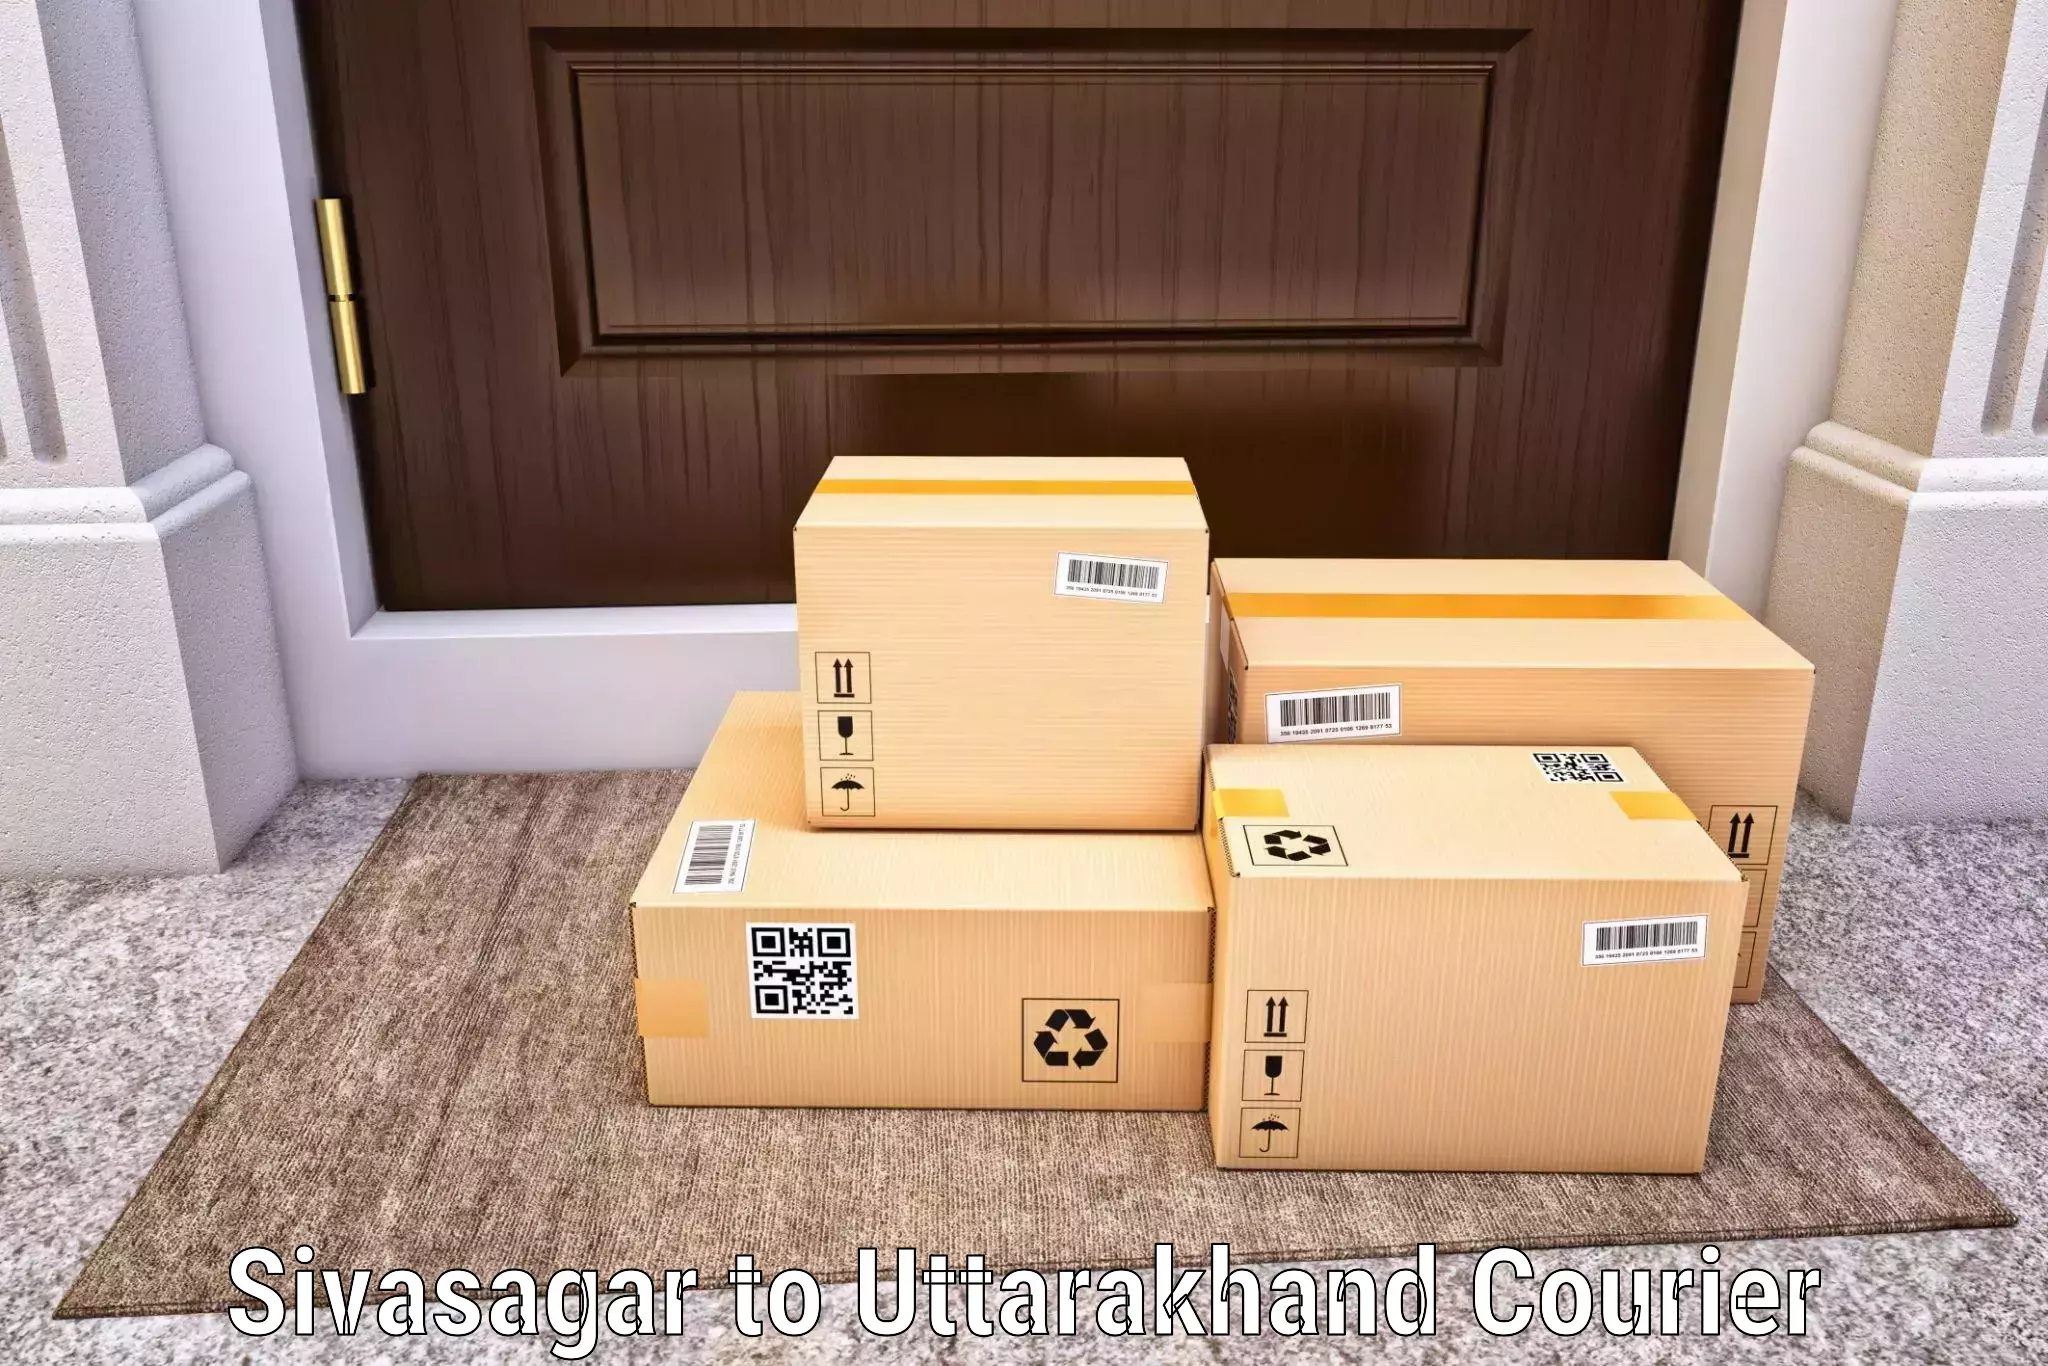 Cargo delivery service Sivasagar to Srinagar Pauri Garhwal